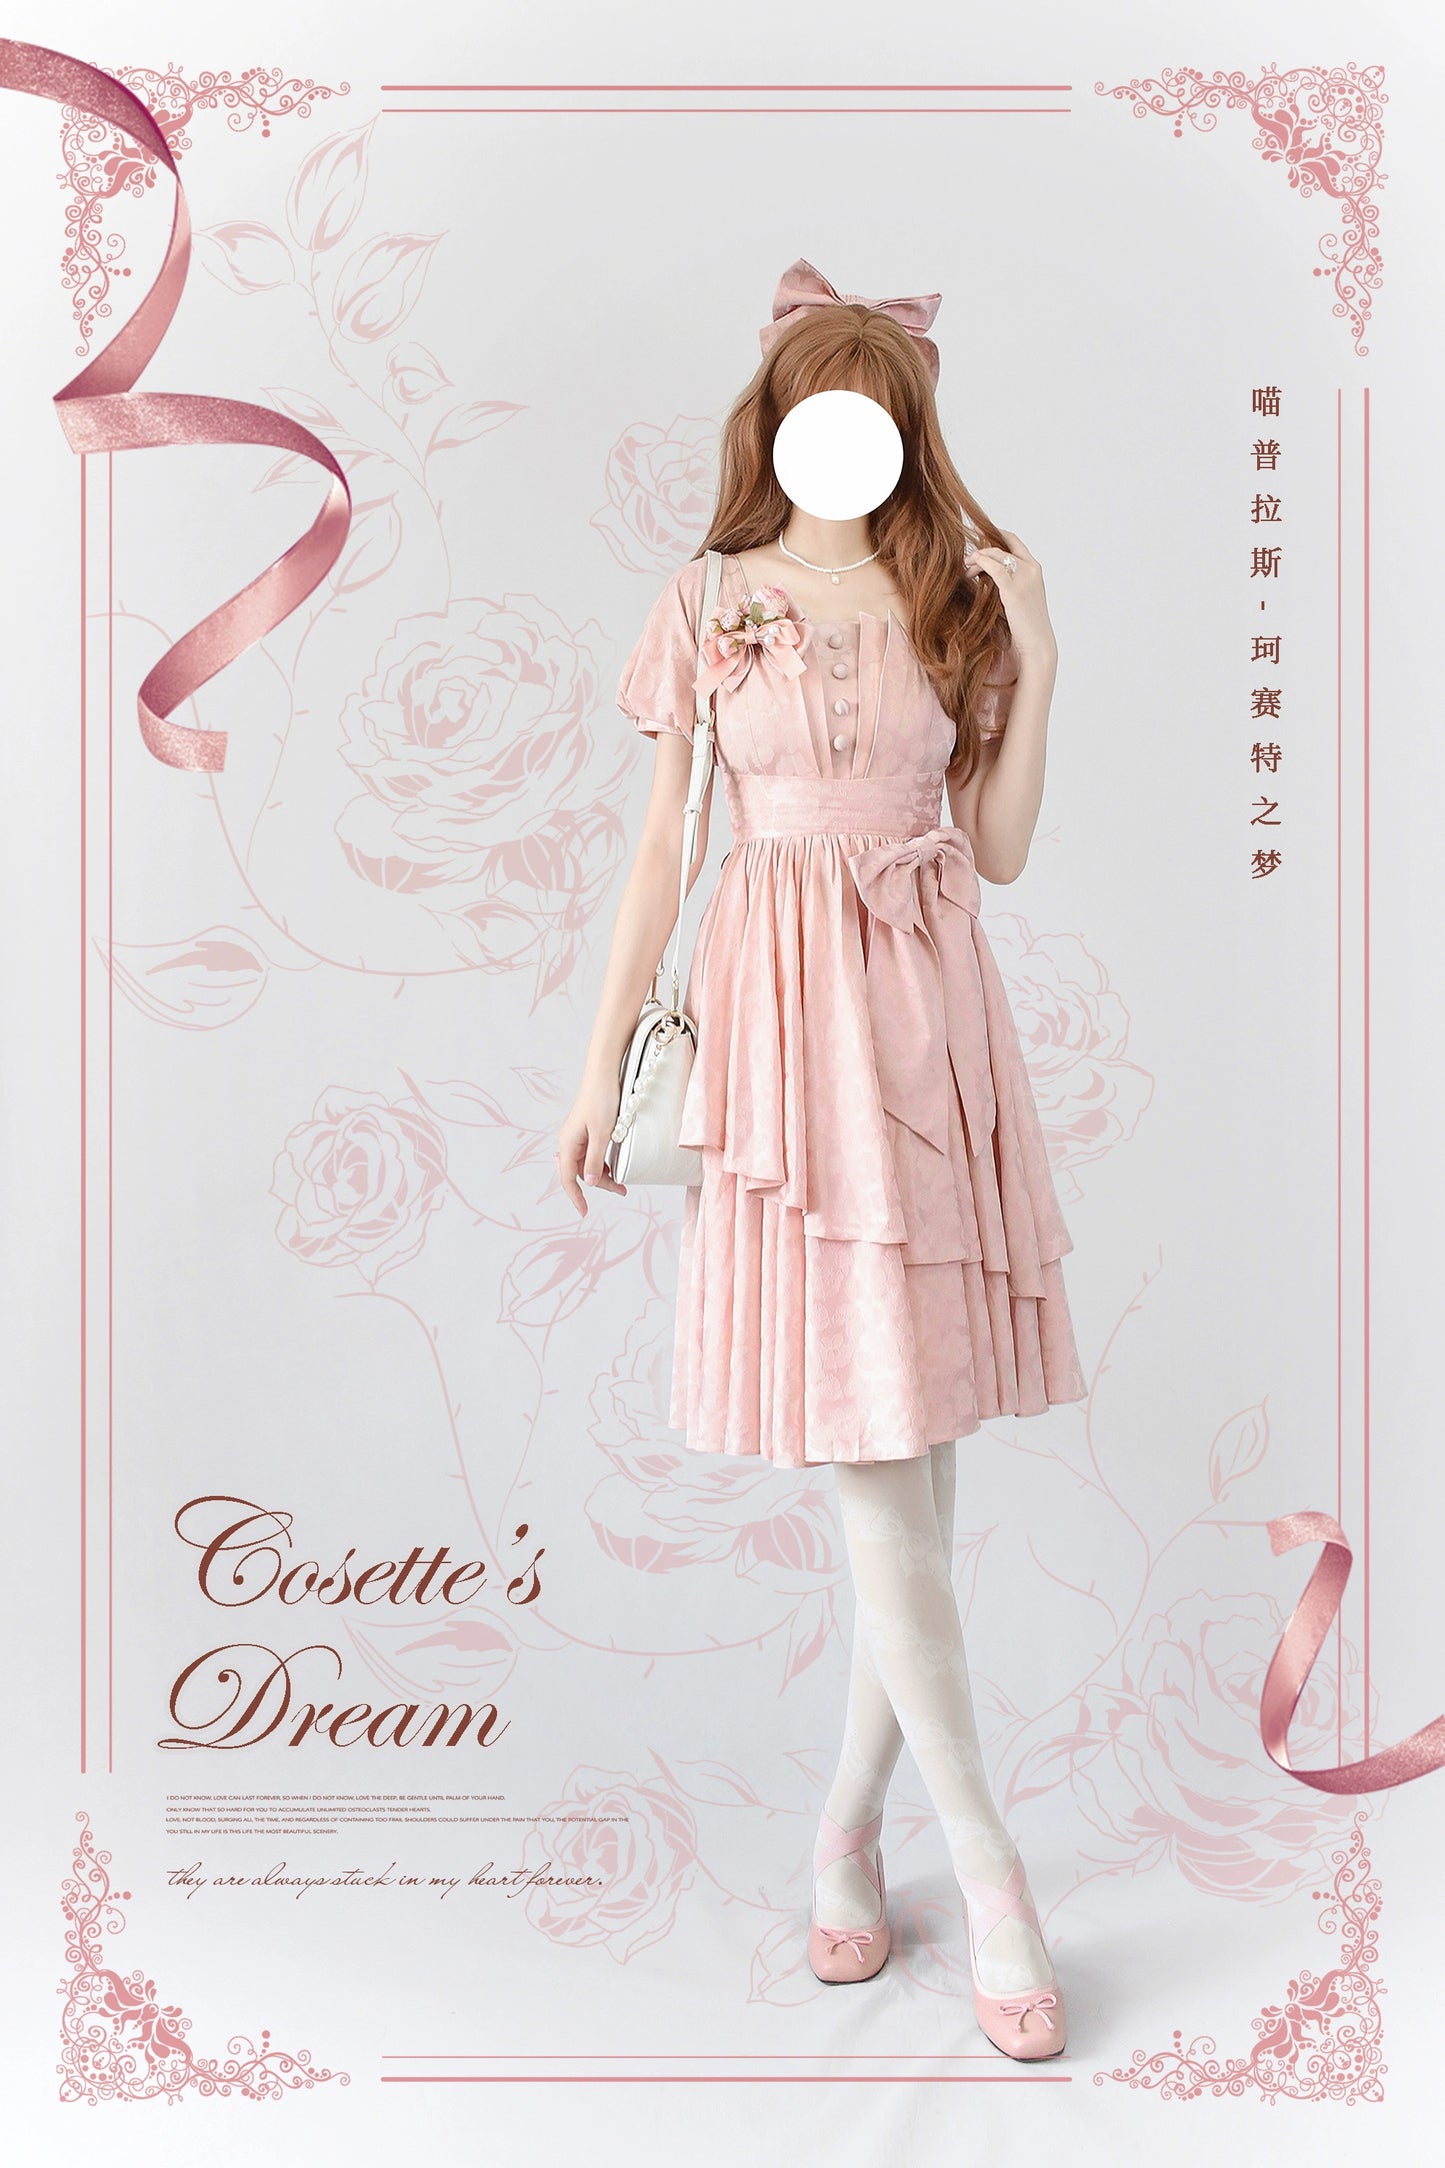 【販売期間終了】Cosette's Dream ジャガード織ワンピース